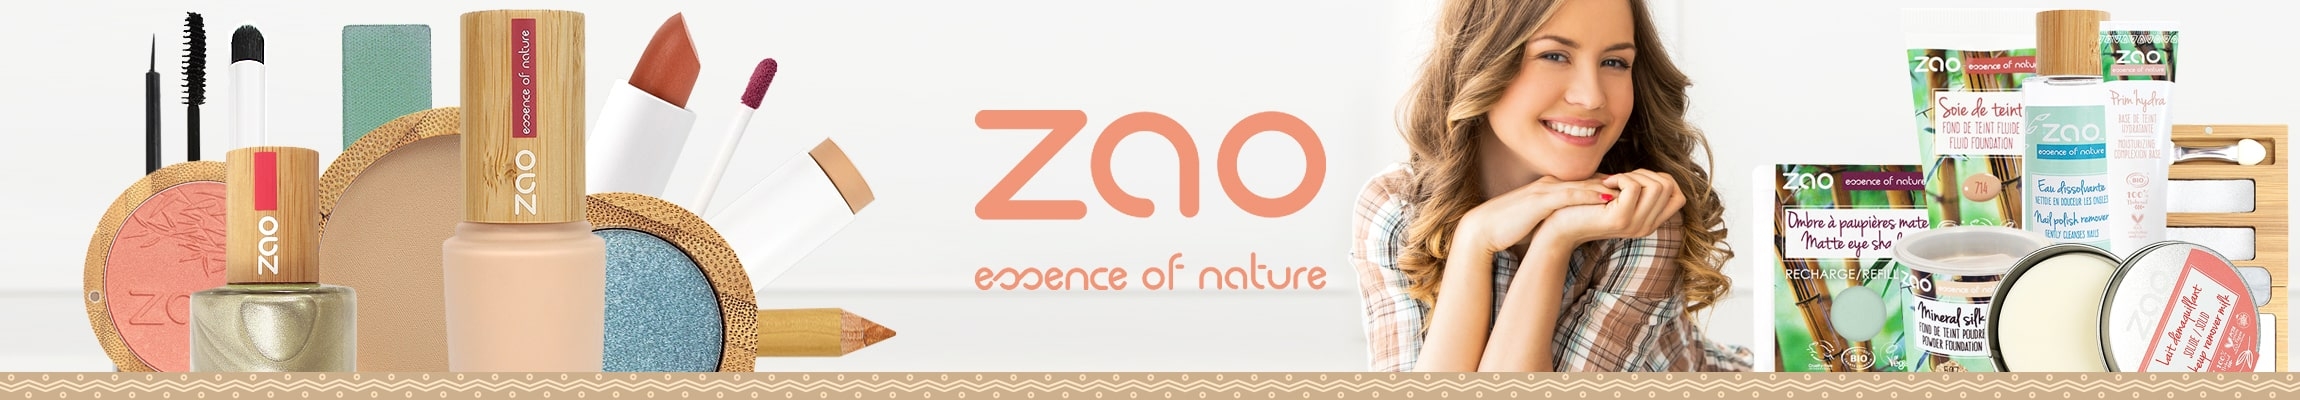 Zao Make-up